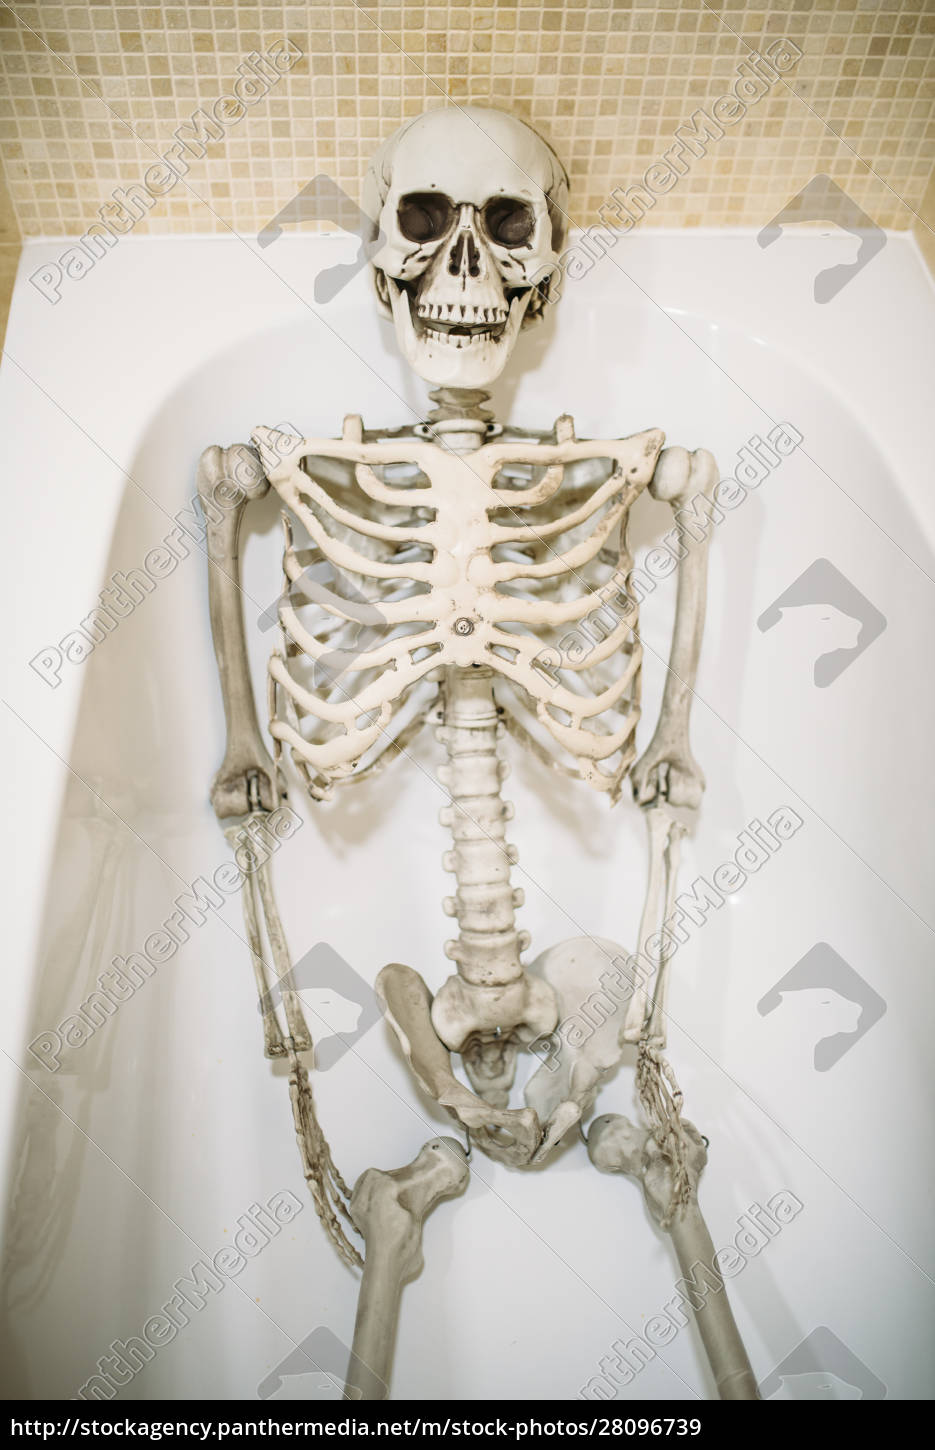 Divertente scheletro umano sdraiato nel bagno senza - Foto stock #28096739